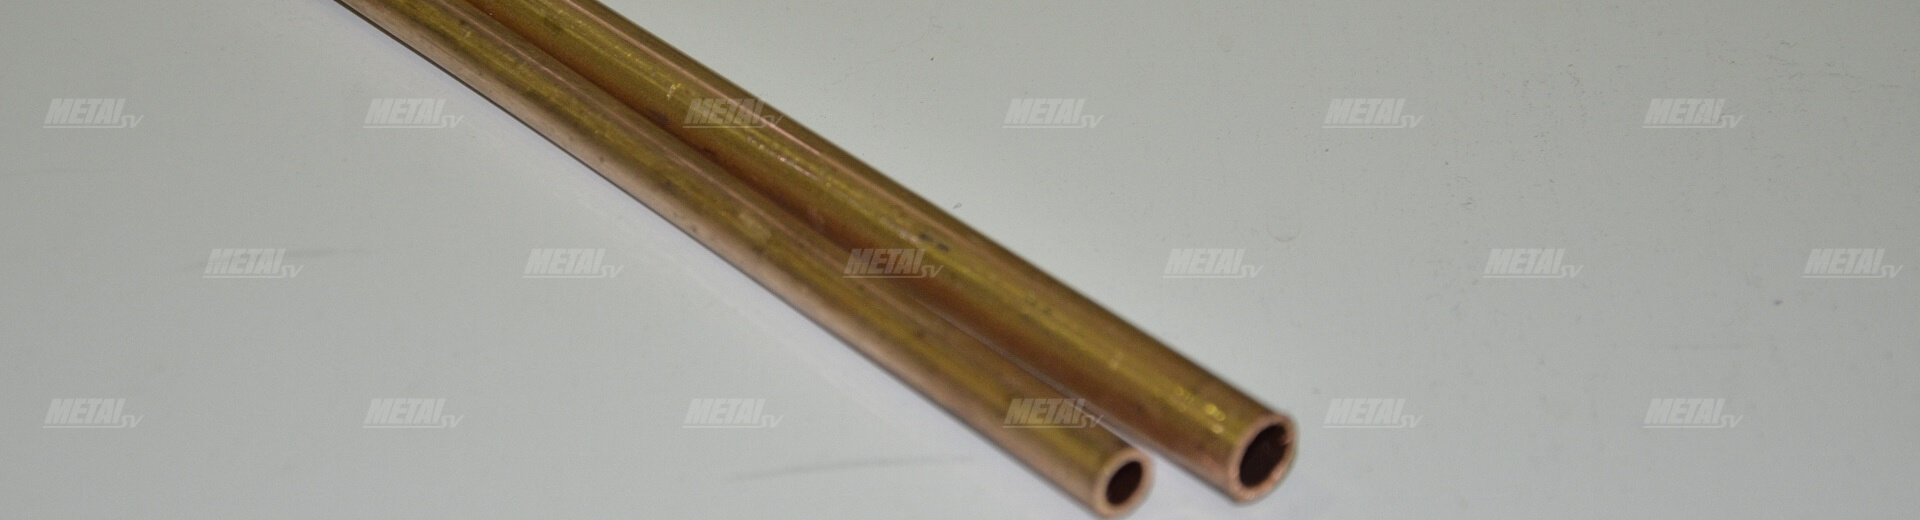 5 мм — медная труба для Кирова изображение №3